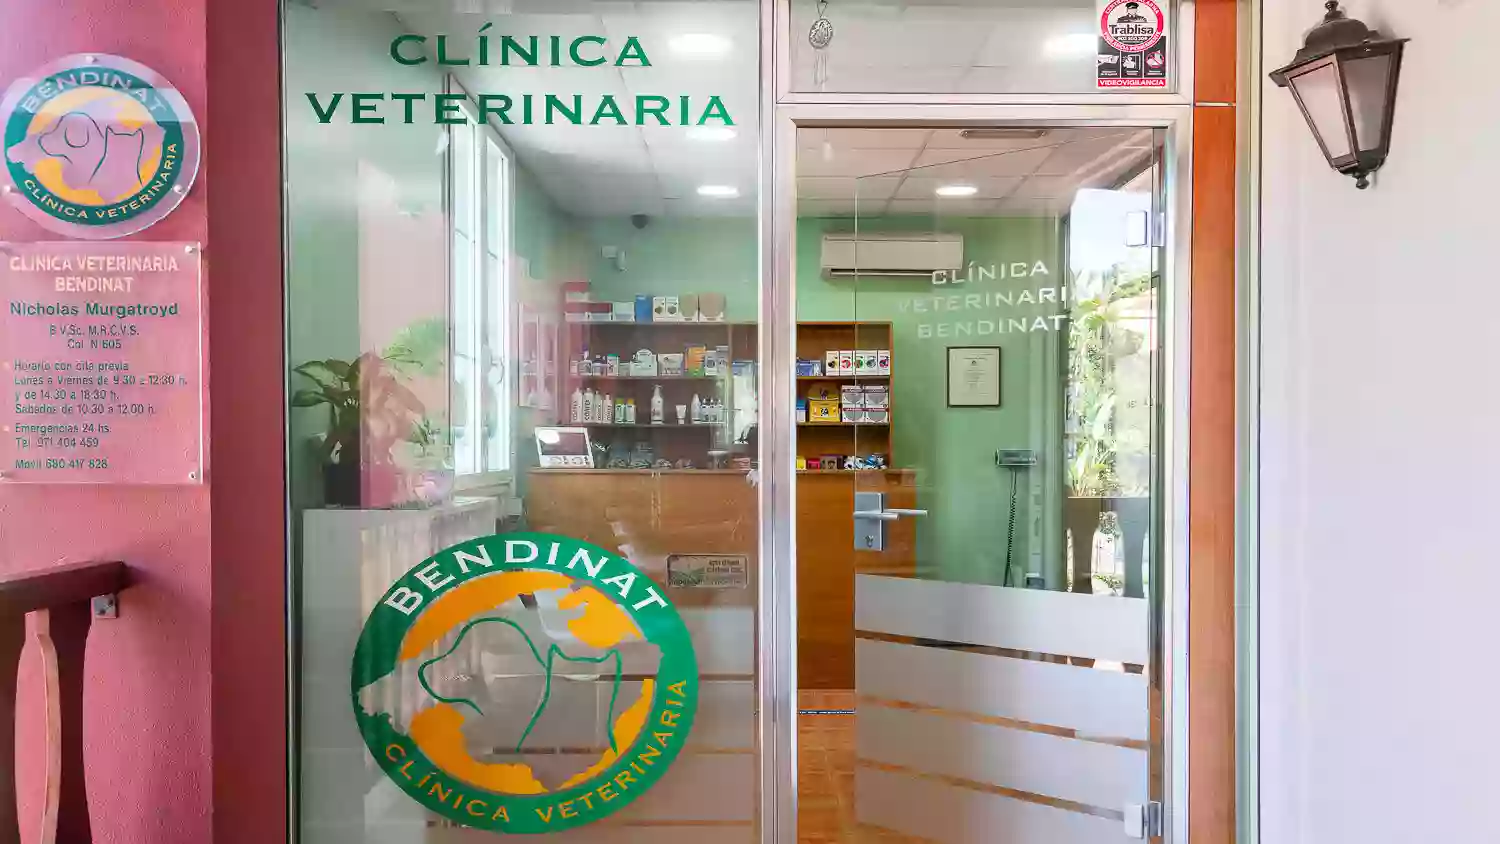 Clinica Veterinaria Bendinat